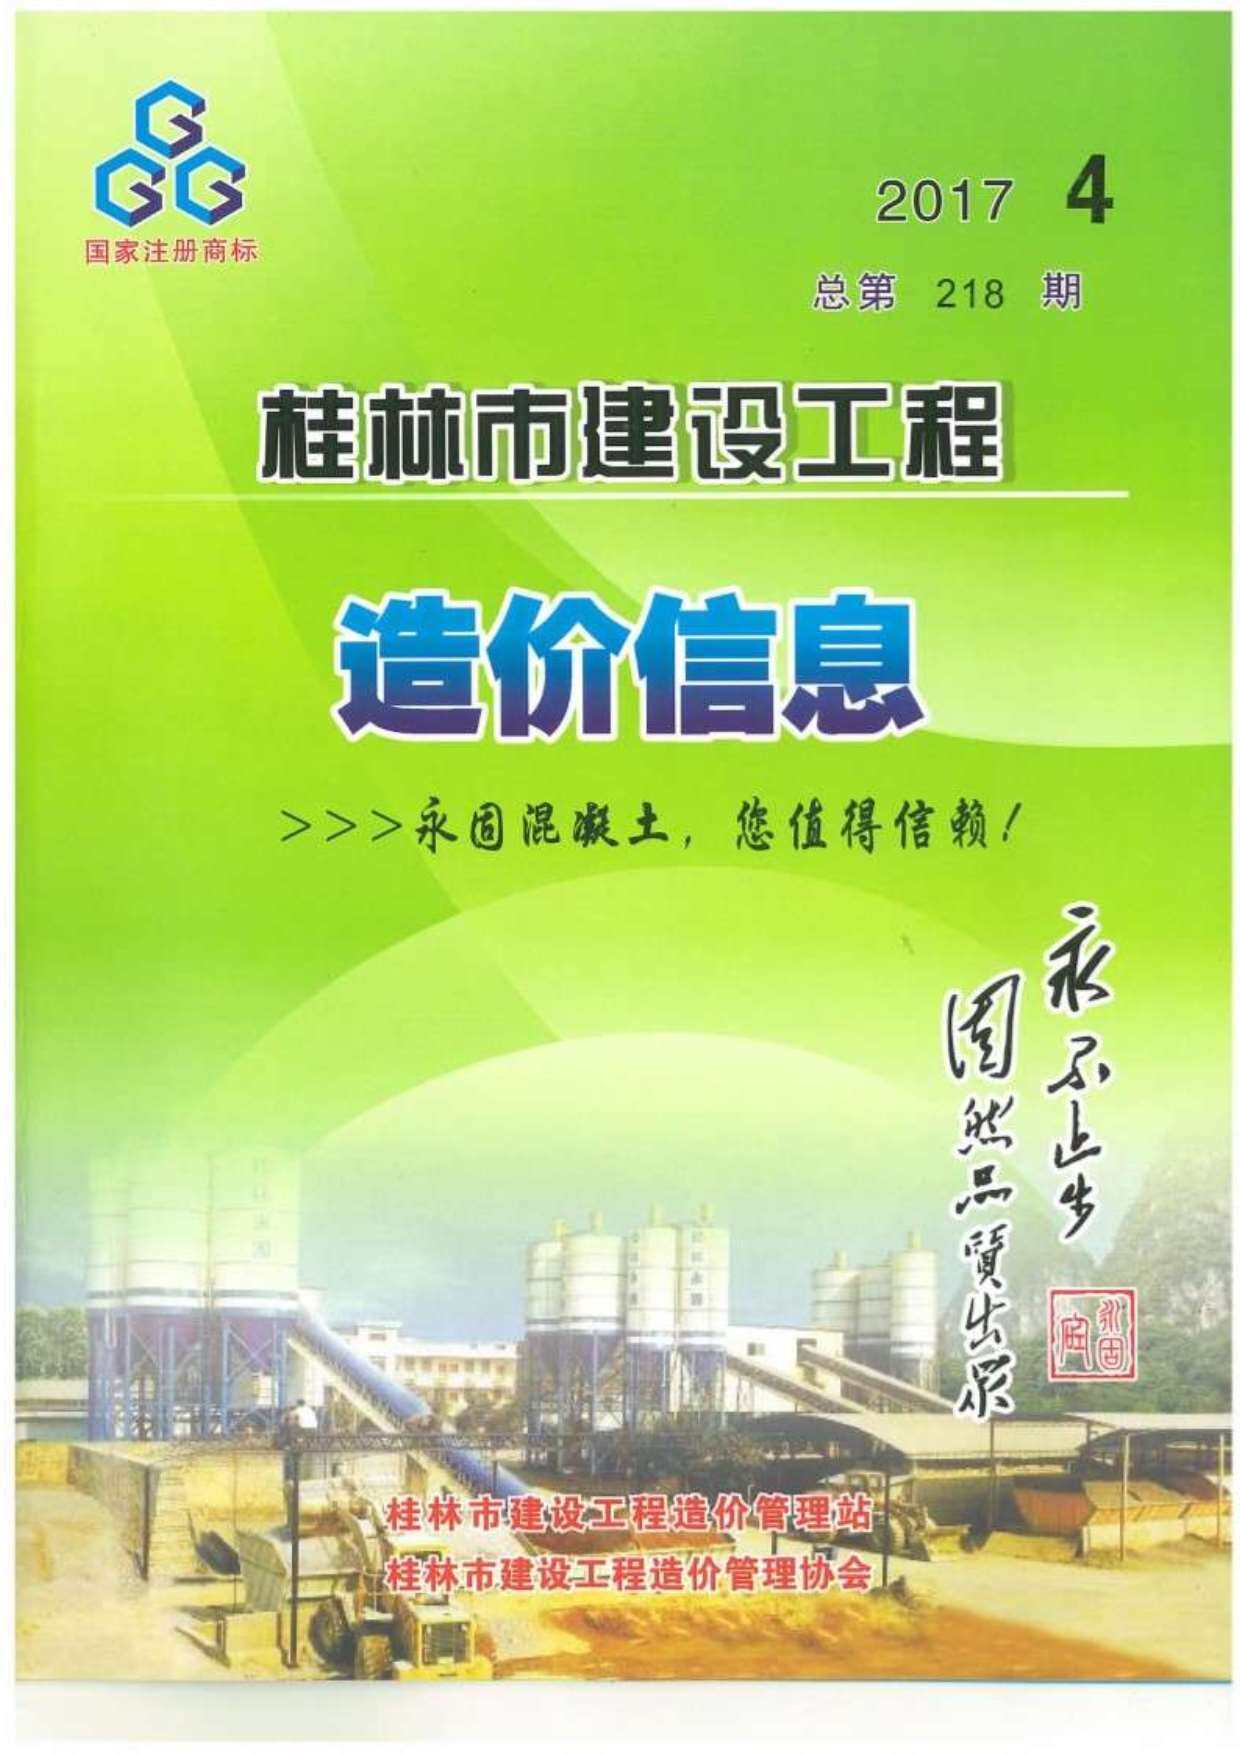 桂林市2017年4月工程造价信息期刊